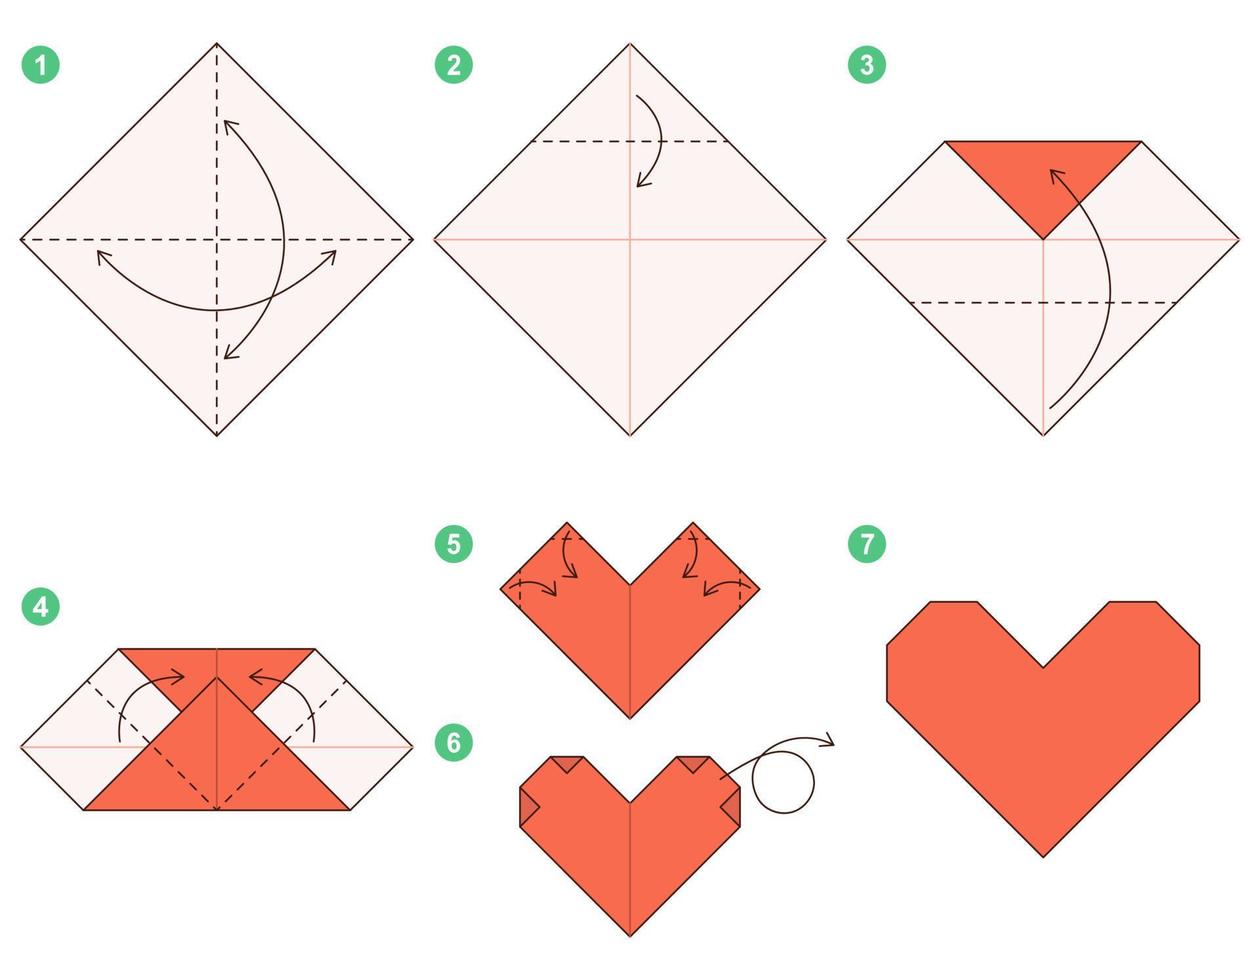 Herz-Origami-Schema-Tutorial, bewegliches Modell. Origami für Kinder. Schritt für Schritt, wie man ein süßes Origami-Herz macht. Vektor-Illustration. vektor